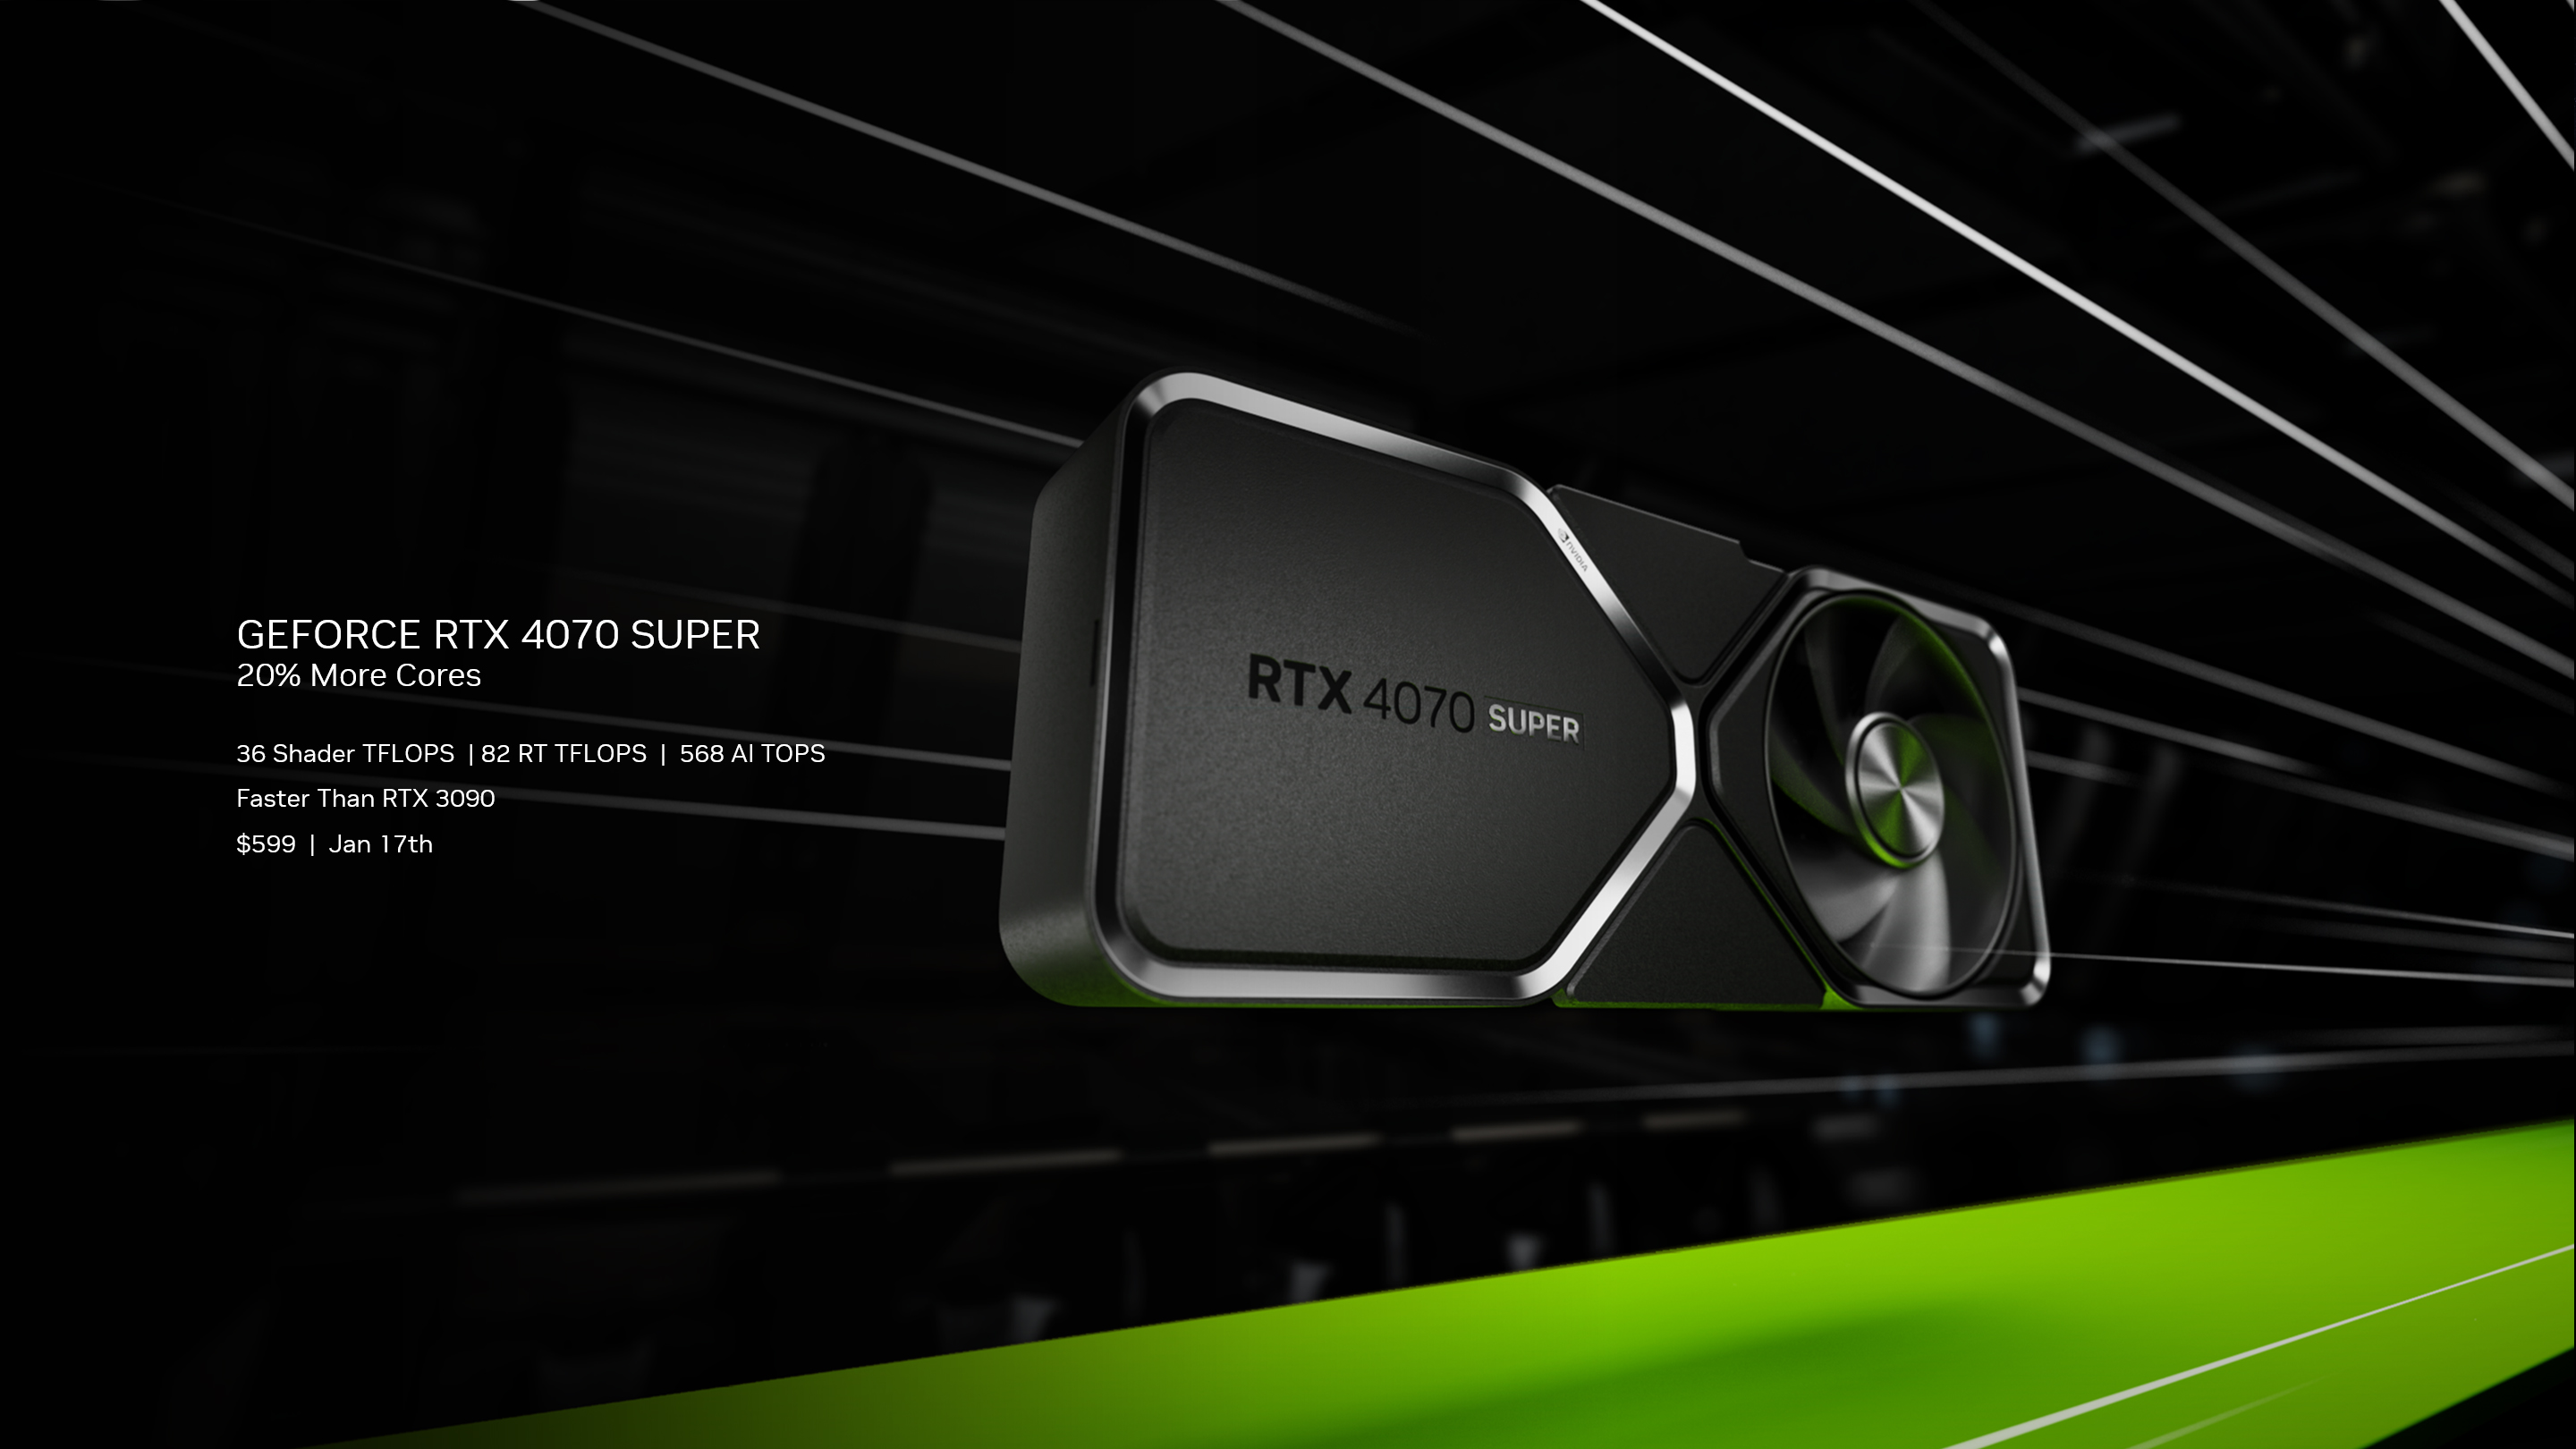 Immagine pubblicata in relazione al seguente contenuto: NVIDIA corregge le specifiche condivise della video card GeForce RTX 4070 SUPER | Nome immagine: news35211_NVIDIA_GeForce-RTX-4070-SUPER_1.jpg